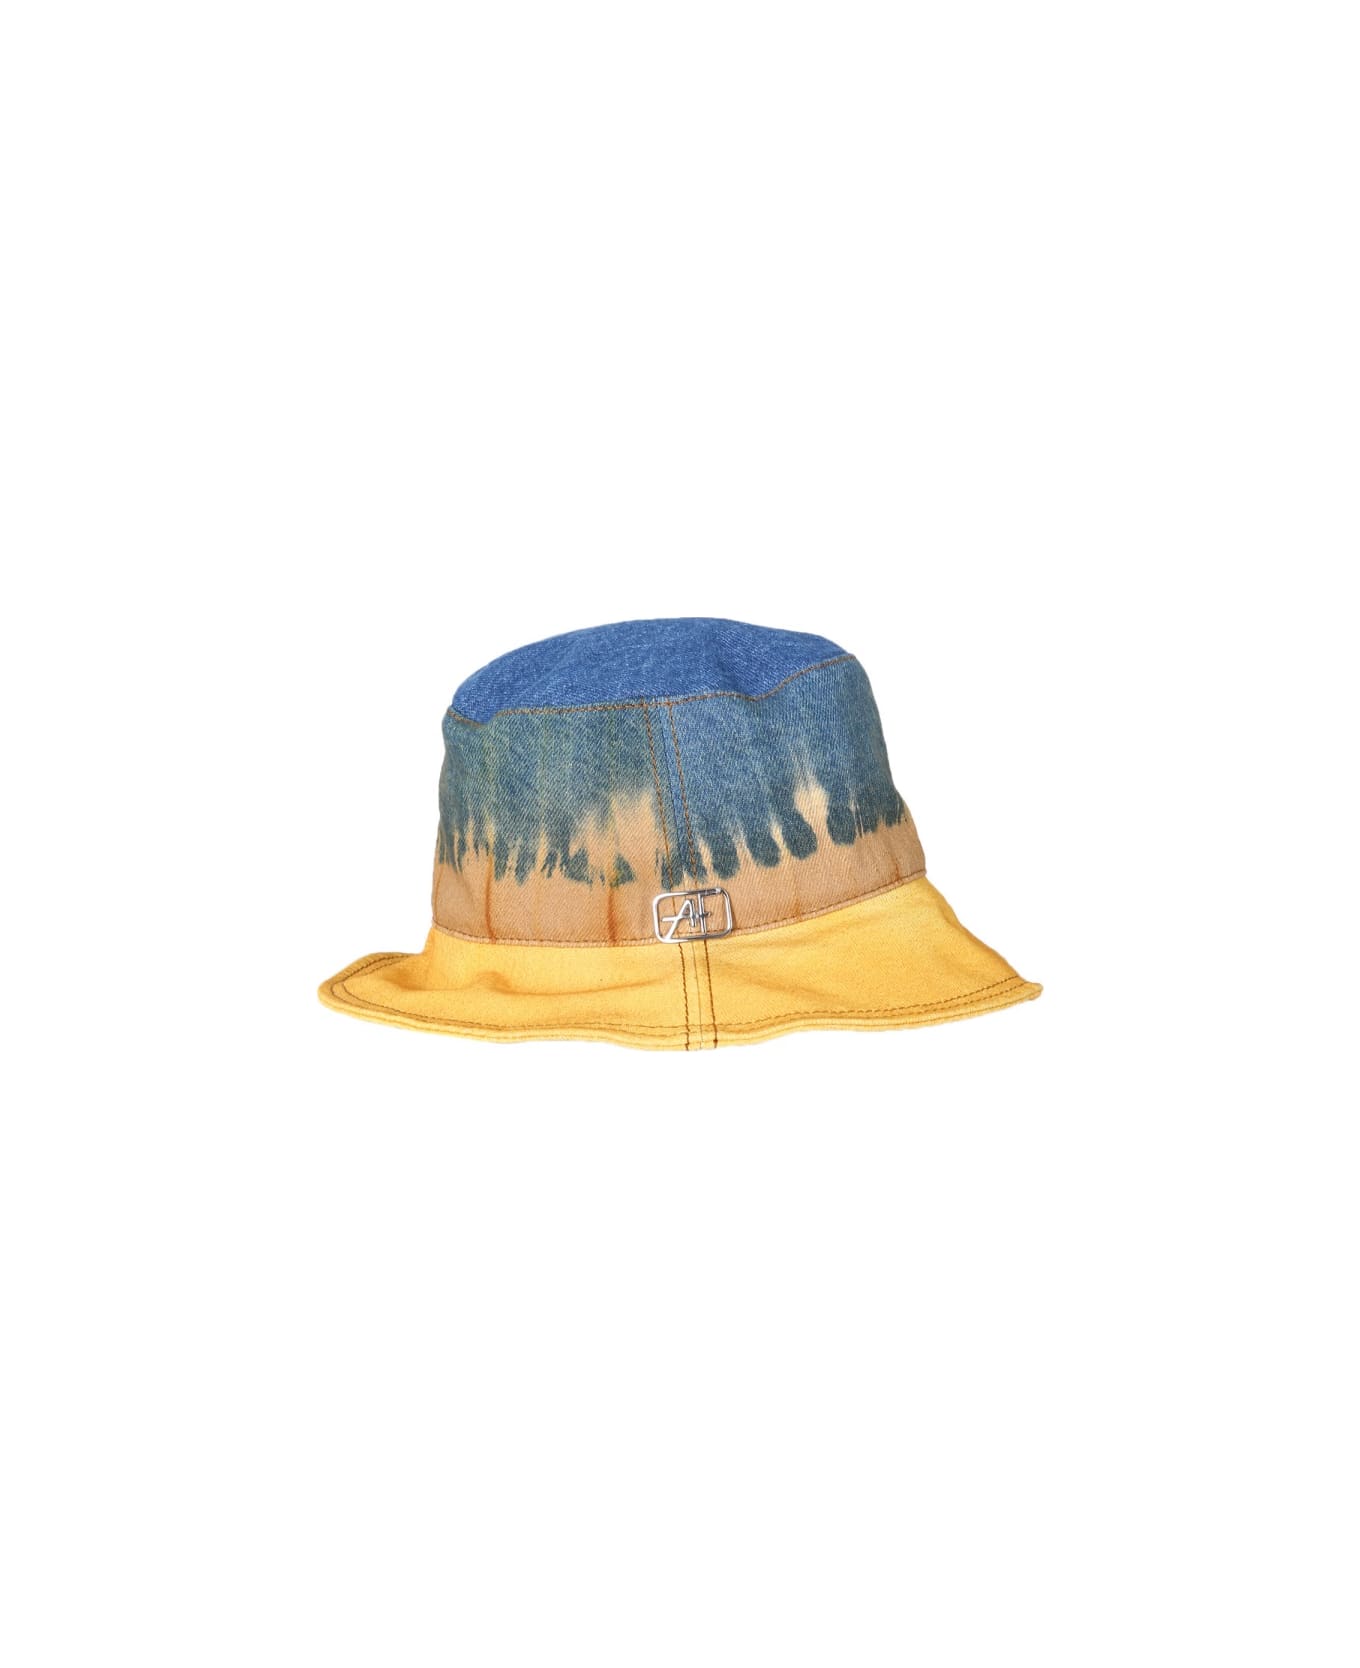 Alberta Ferretti Bucket Hat With Tie Dye Print - MULTICOLOUR